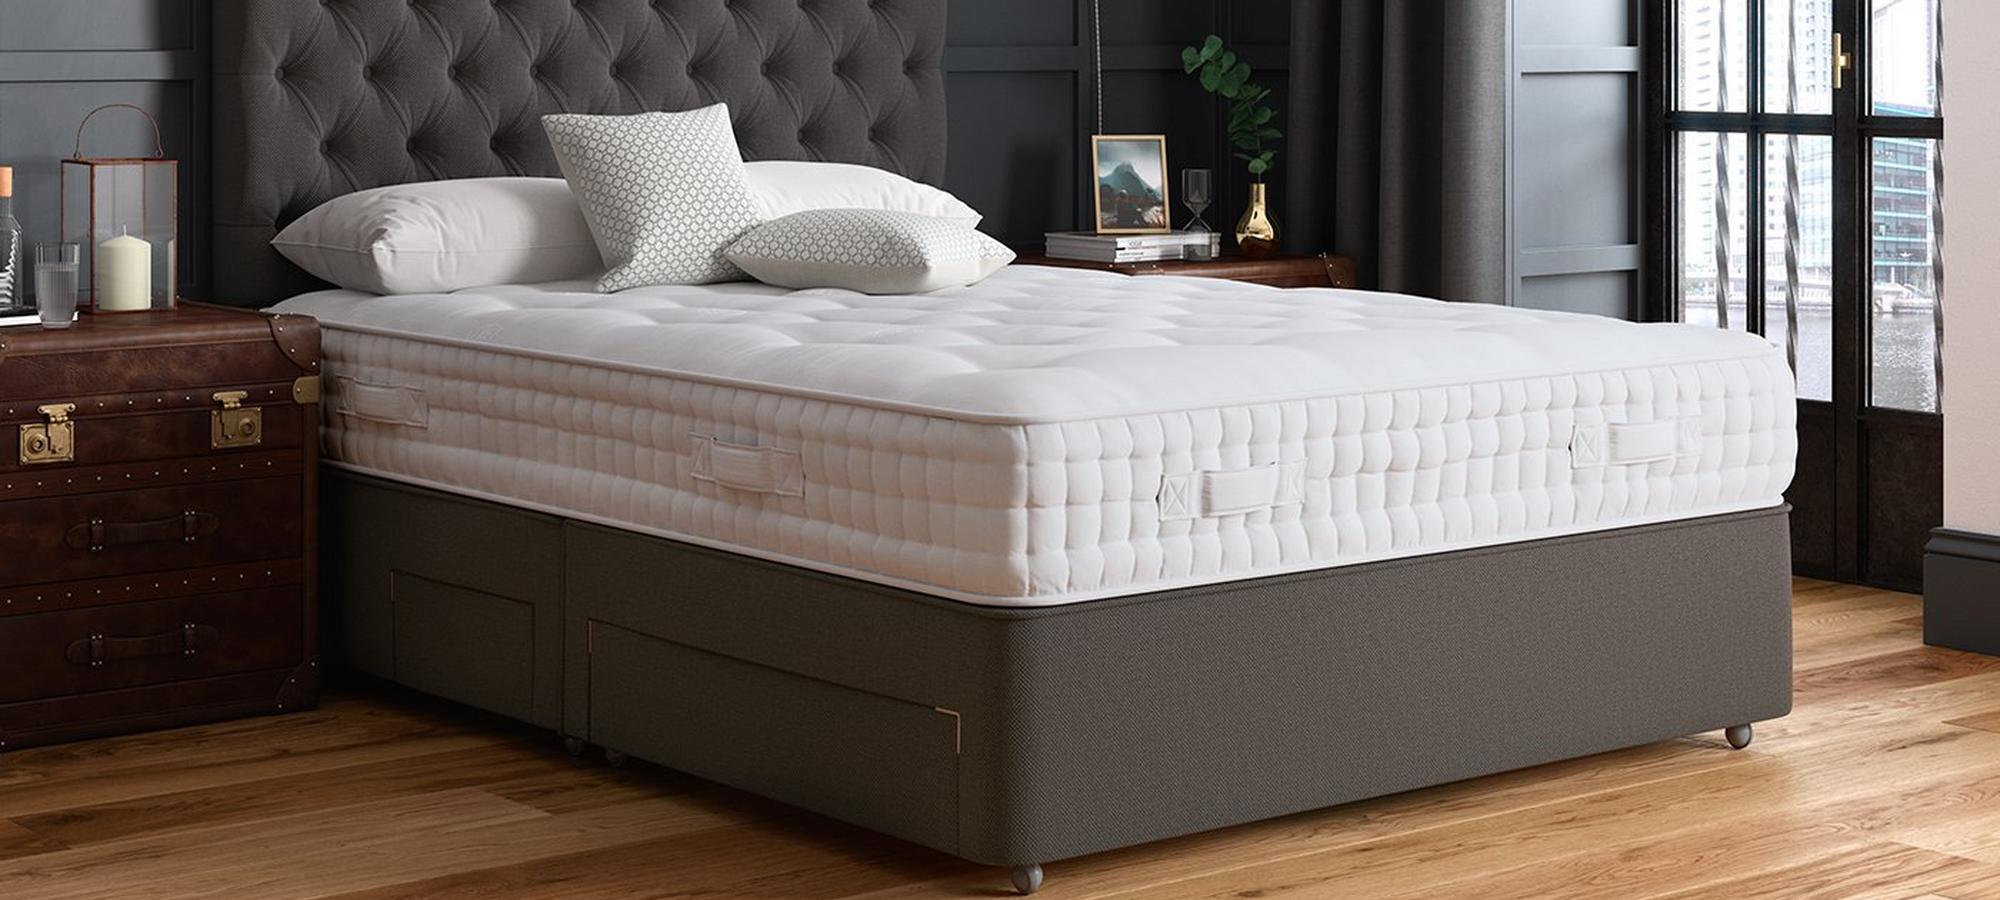 Flaxby mattress